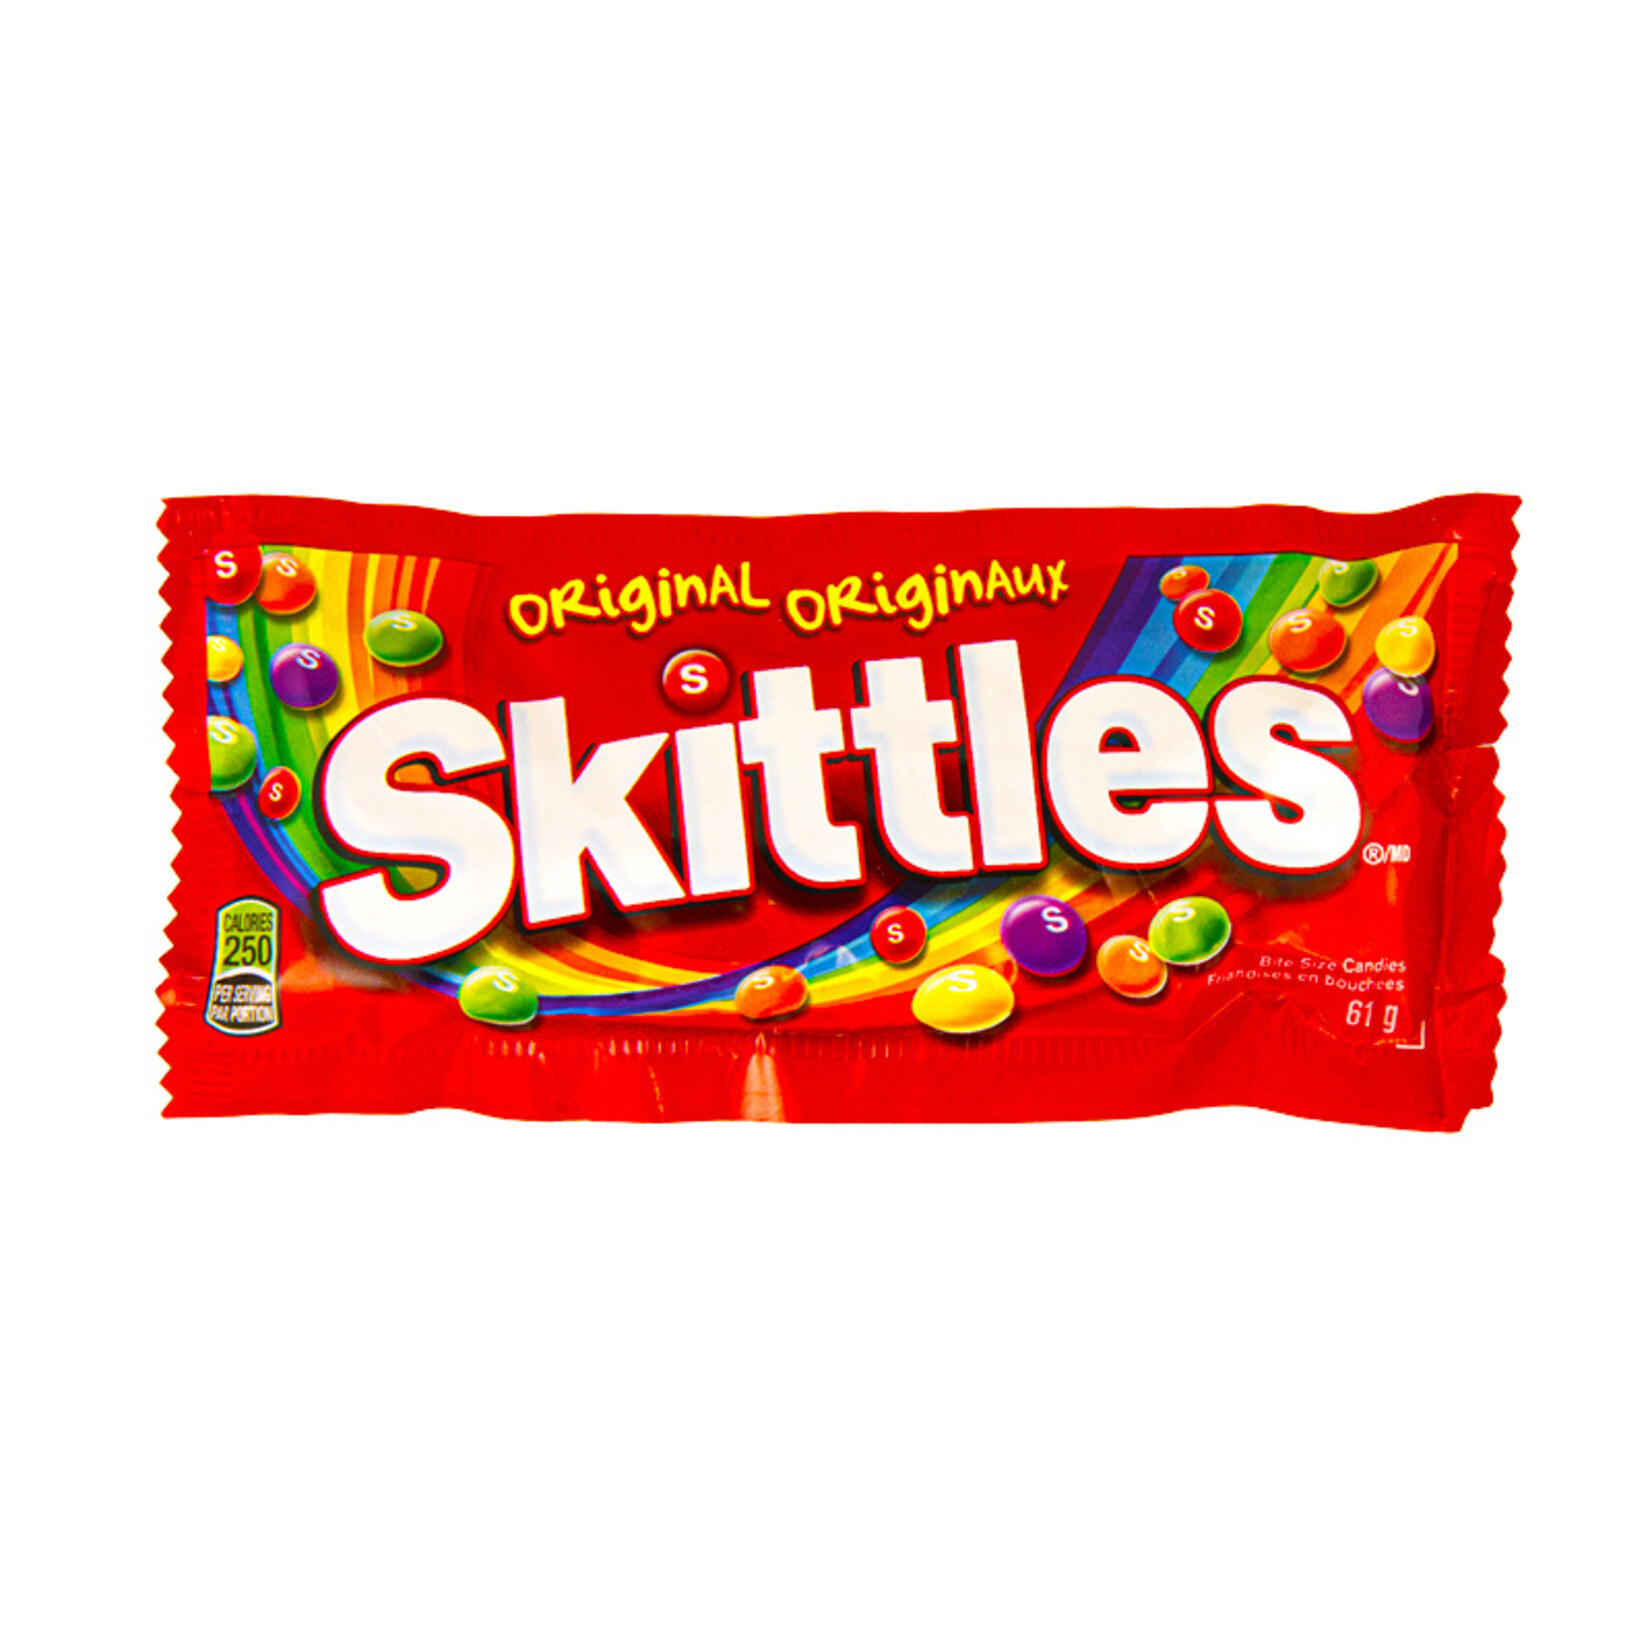 Skittles Original Skittles 61.5g